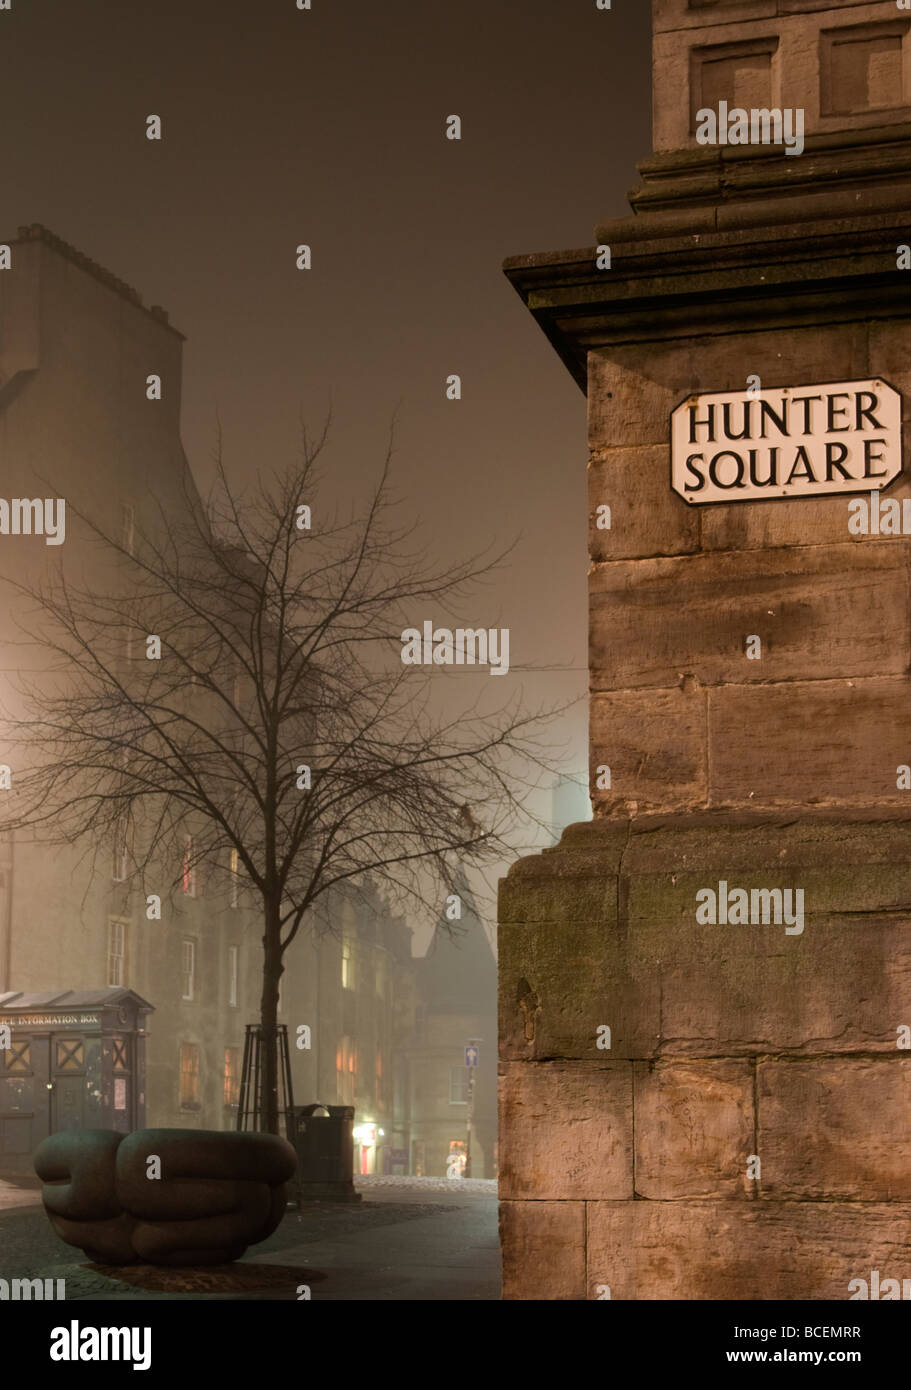 L'angolo di Hunter Square off the Royal Mile (High Street), Edimburgo, Scozia in una notte di nebbia. Foto Stock